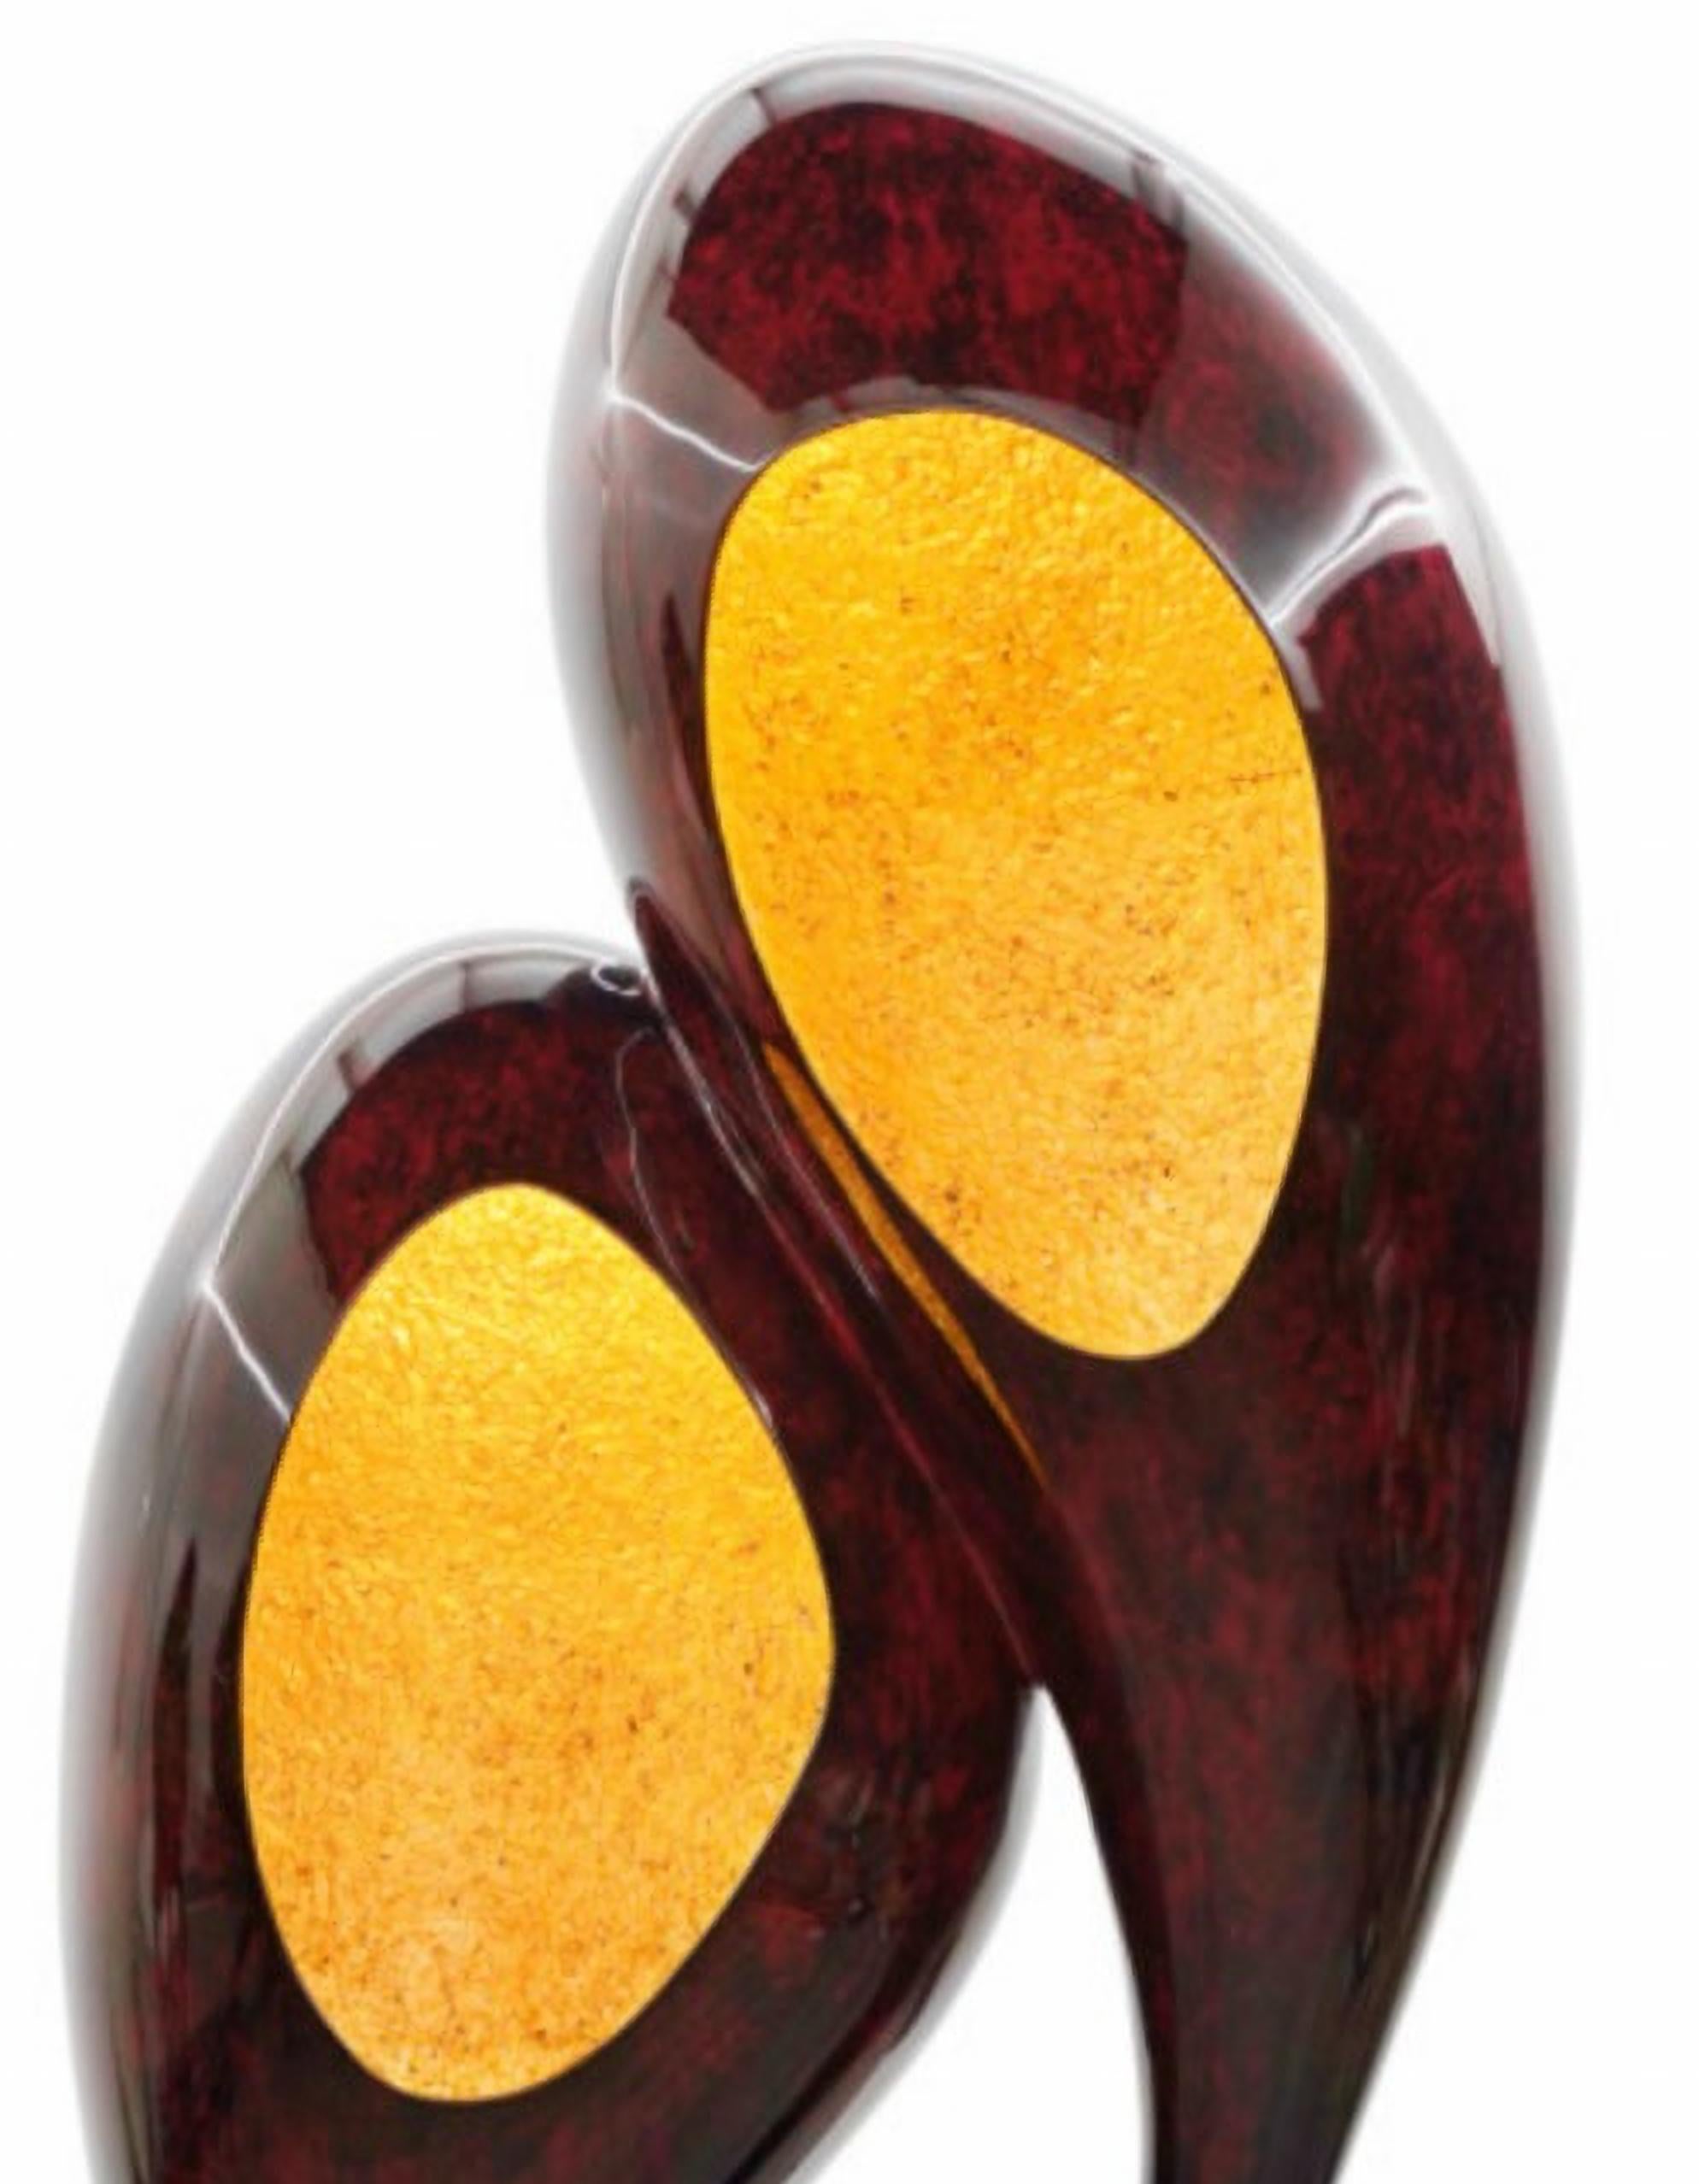 Neue einzigartige Vitrine.

Innen mit strukturiertem Blattgold, hochglänzende rote Opalstruktur.
Abmessungen:
73 x 63 x 198 cm
28.7 x 24.8 x 78 in.

Äußere Struktur: Harz mit Glasfaserverstärkung mit hochglänzender roter Opal-Oberfläche;
Interne